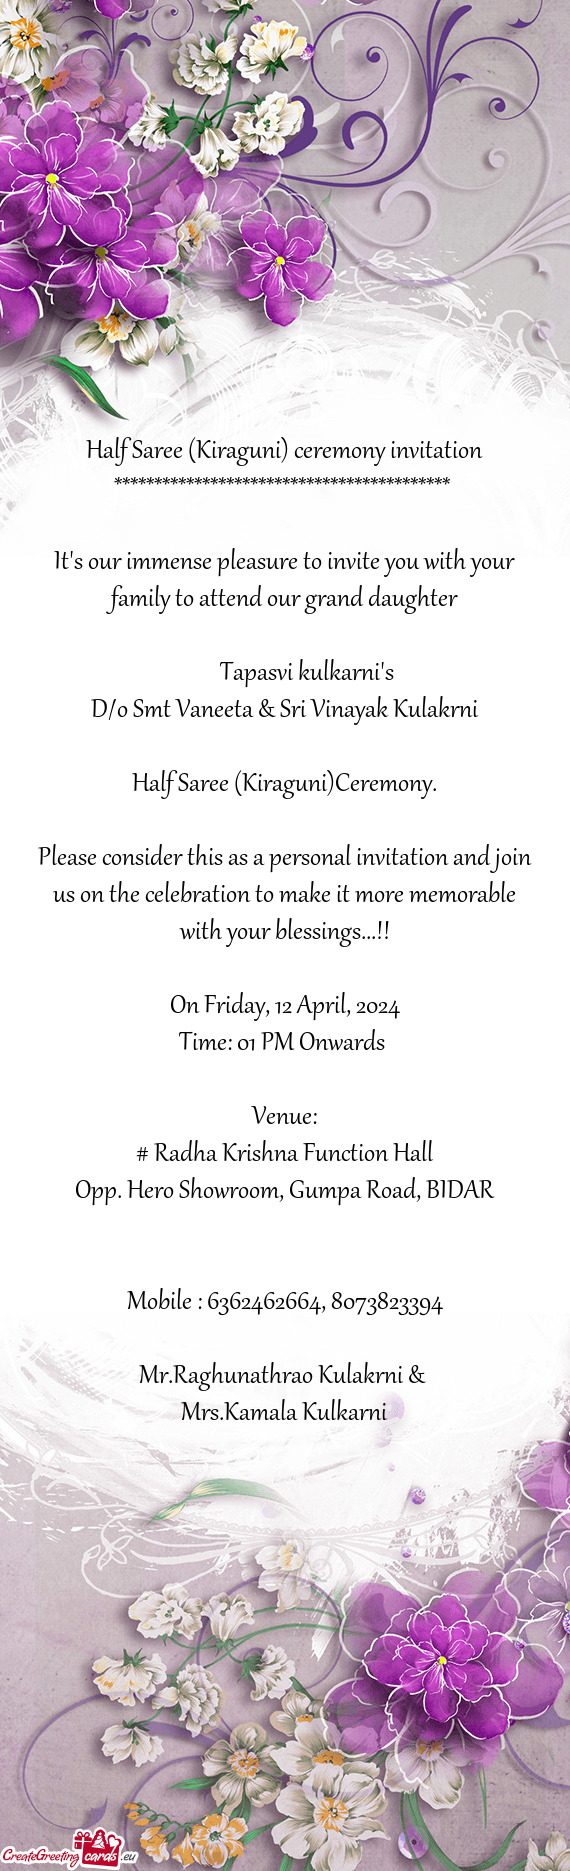 Half Saree (Kiraguni) ceremony invitation